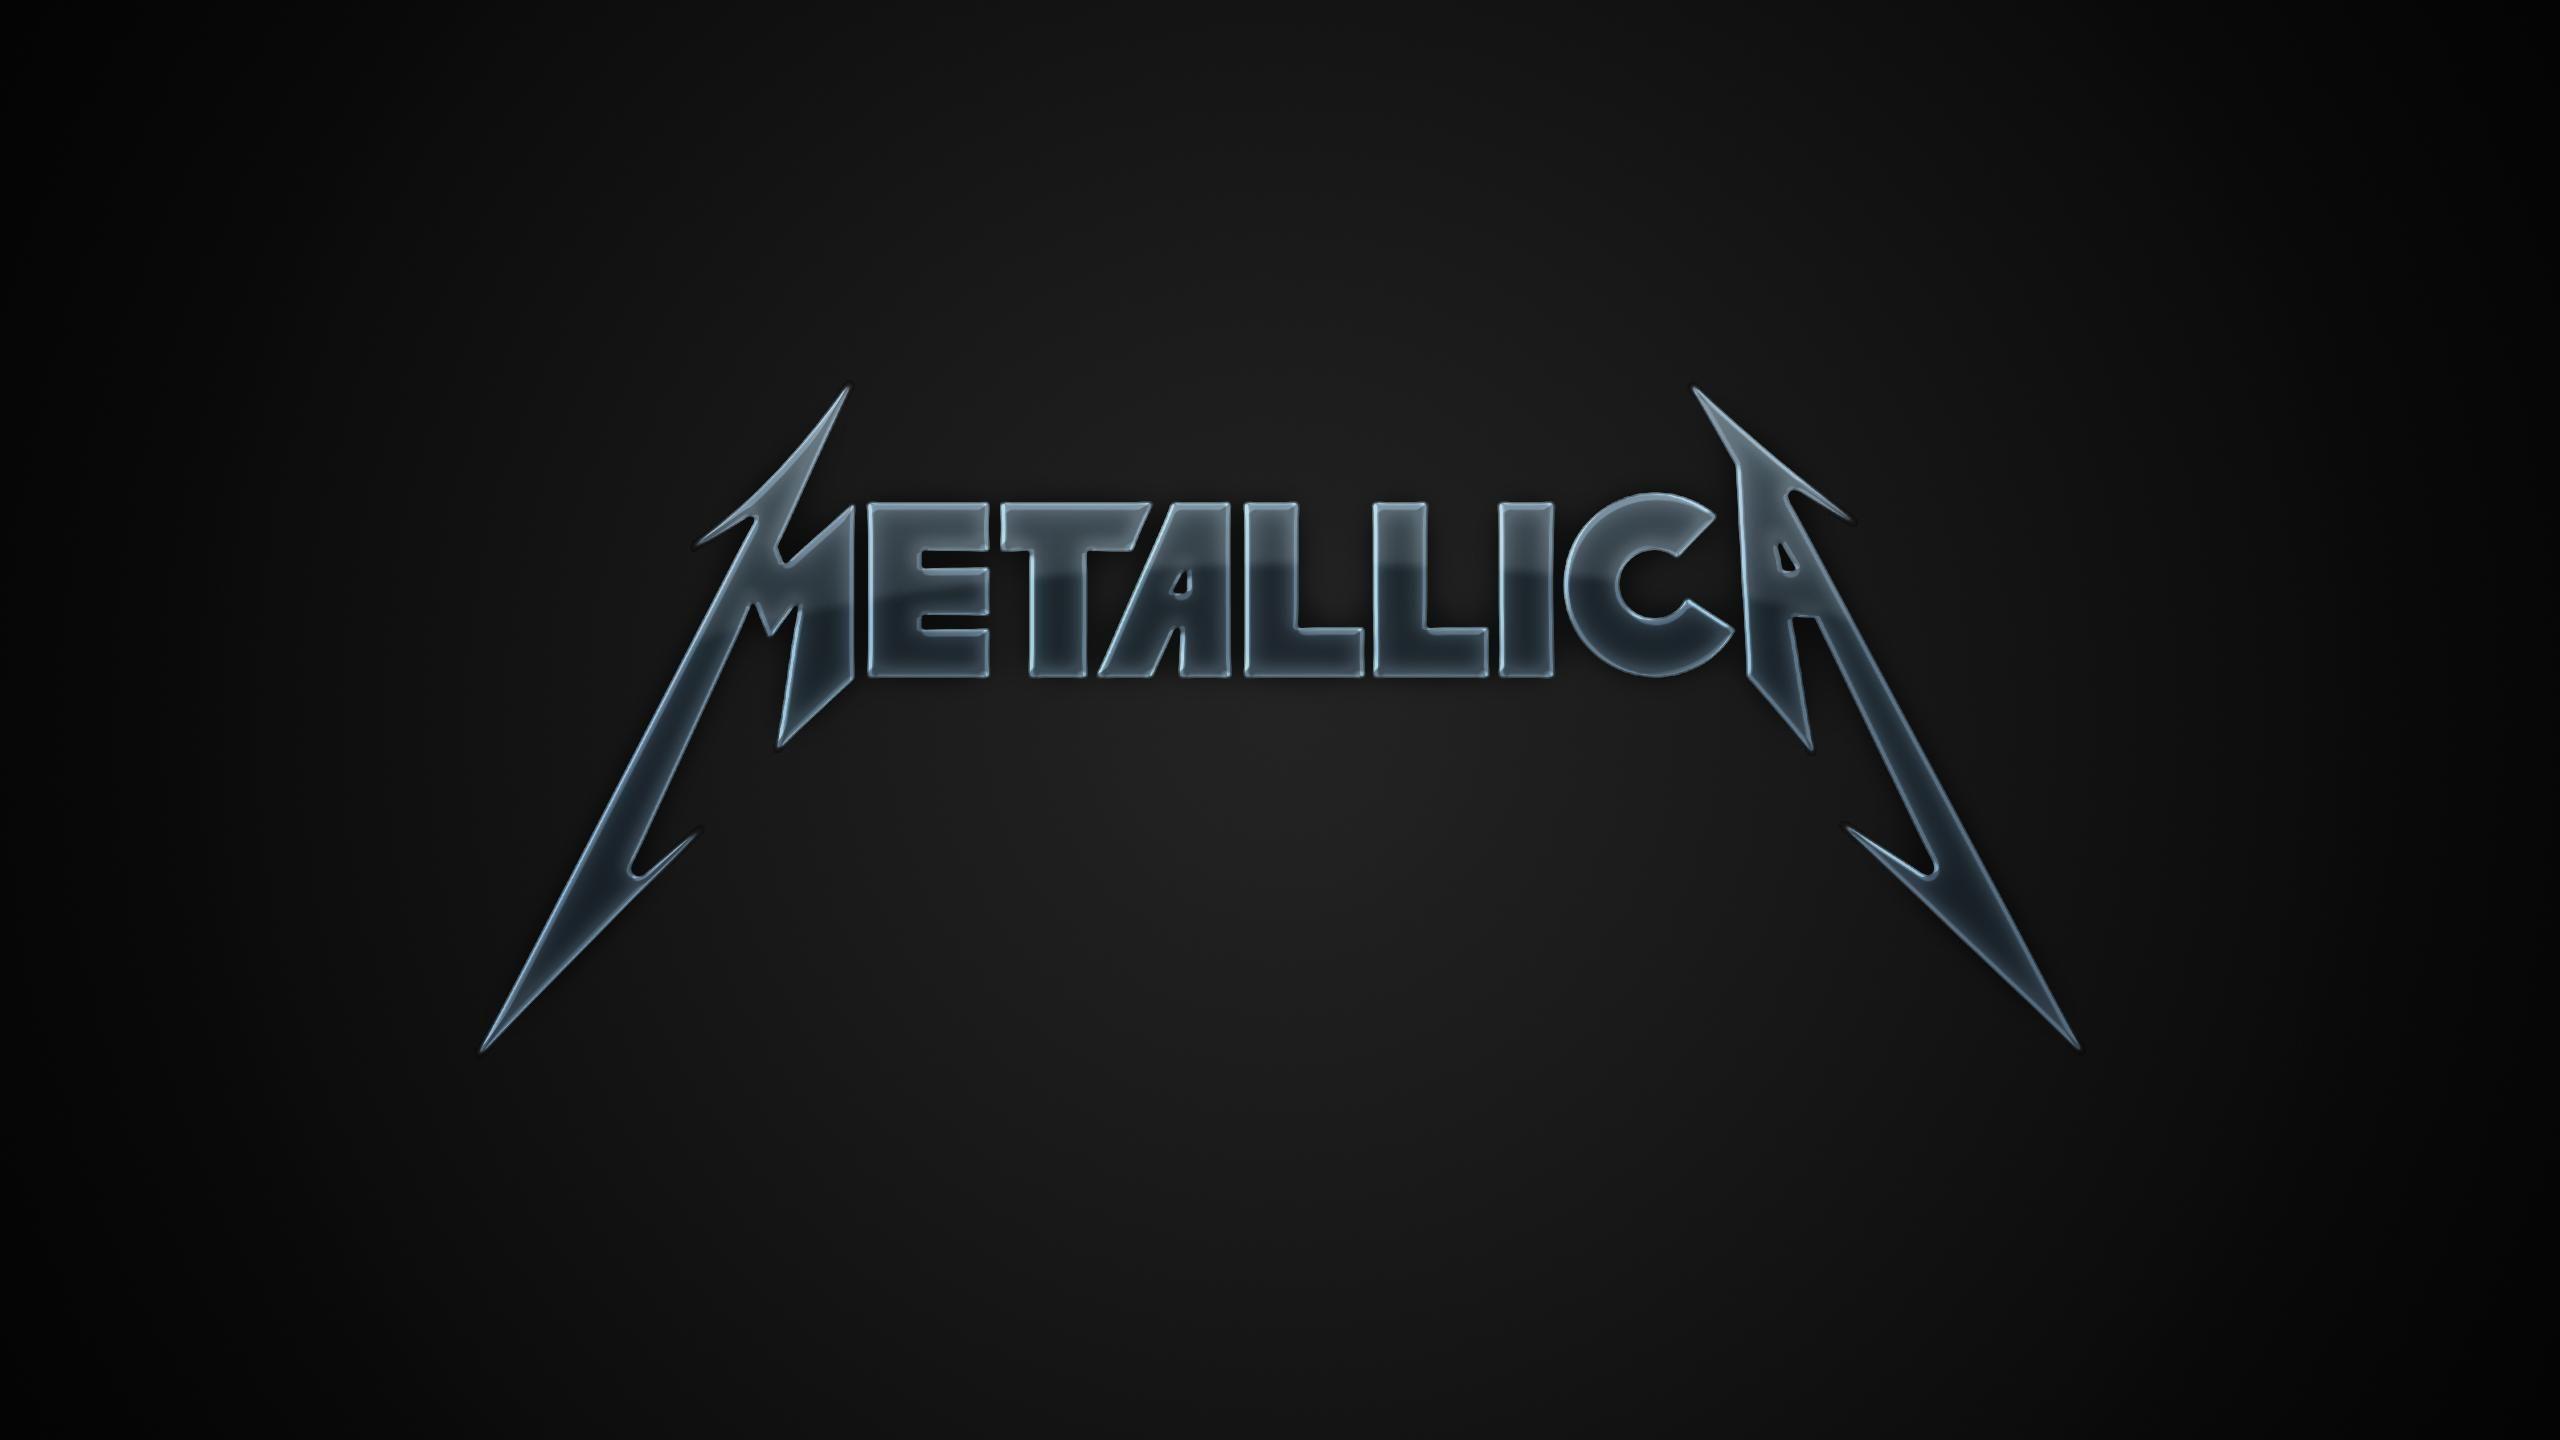 Nếu bạn muốn trang trí máy tính, điện thoại hay máy tính bảng của mình với hình ảnh của ban nhạc Metallica thì Metallica Wallpapers chính là lựa chọn hoàn hảo dành cho bạn. Bộ sưu tập này cung cấp những hình nền HD độc đáo và bắt mắt từ các album và tour của ban nhạc. 